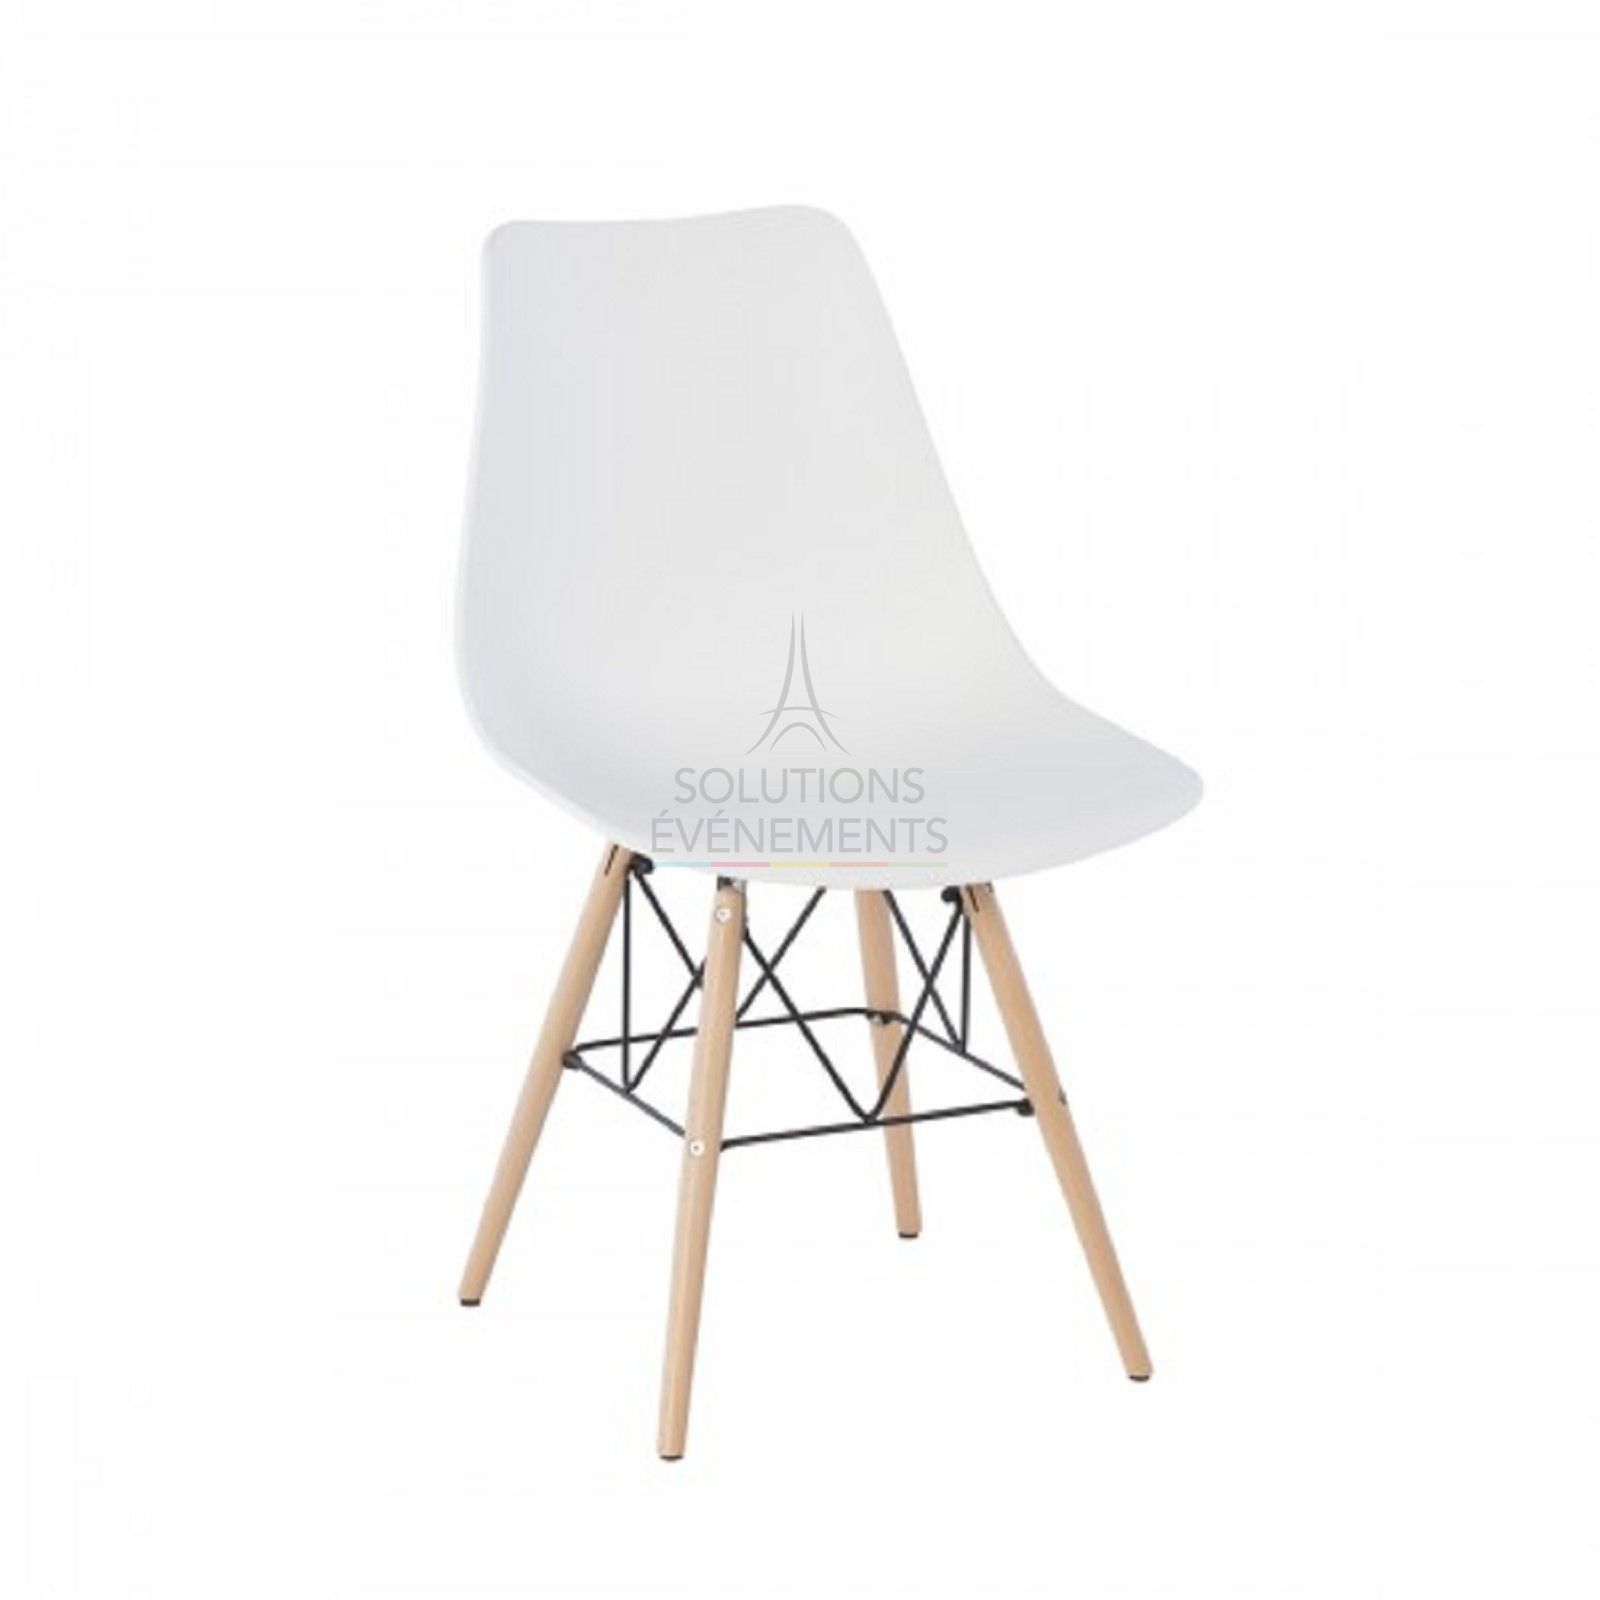 Nordic and Scandinavian design chair rental